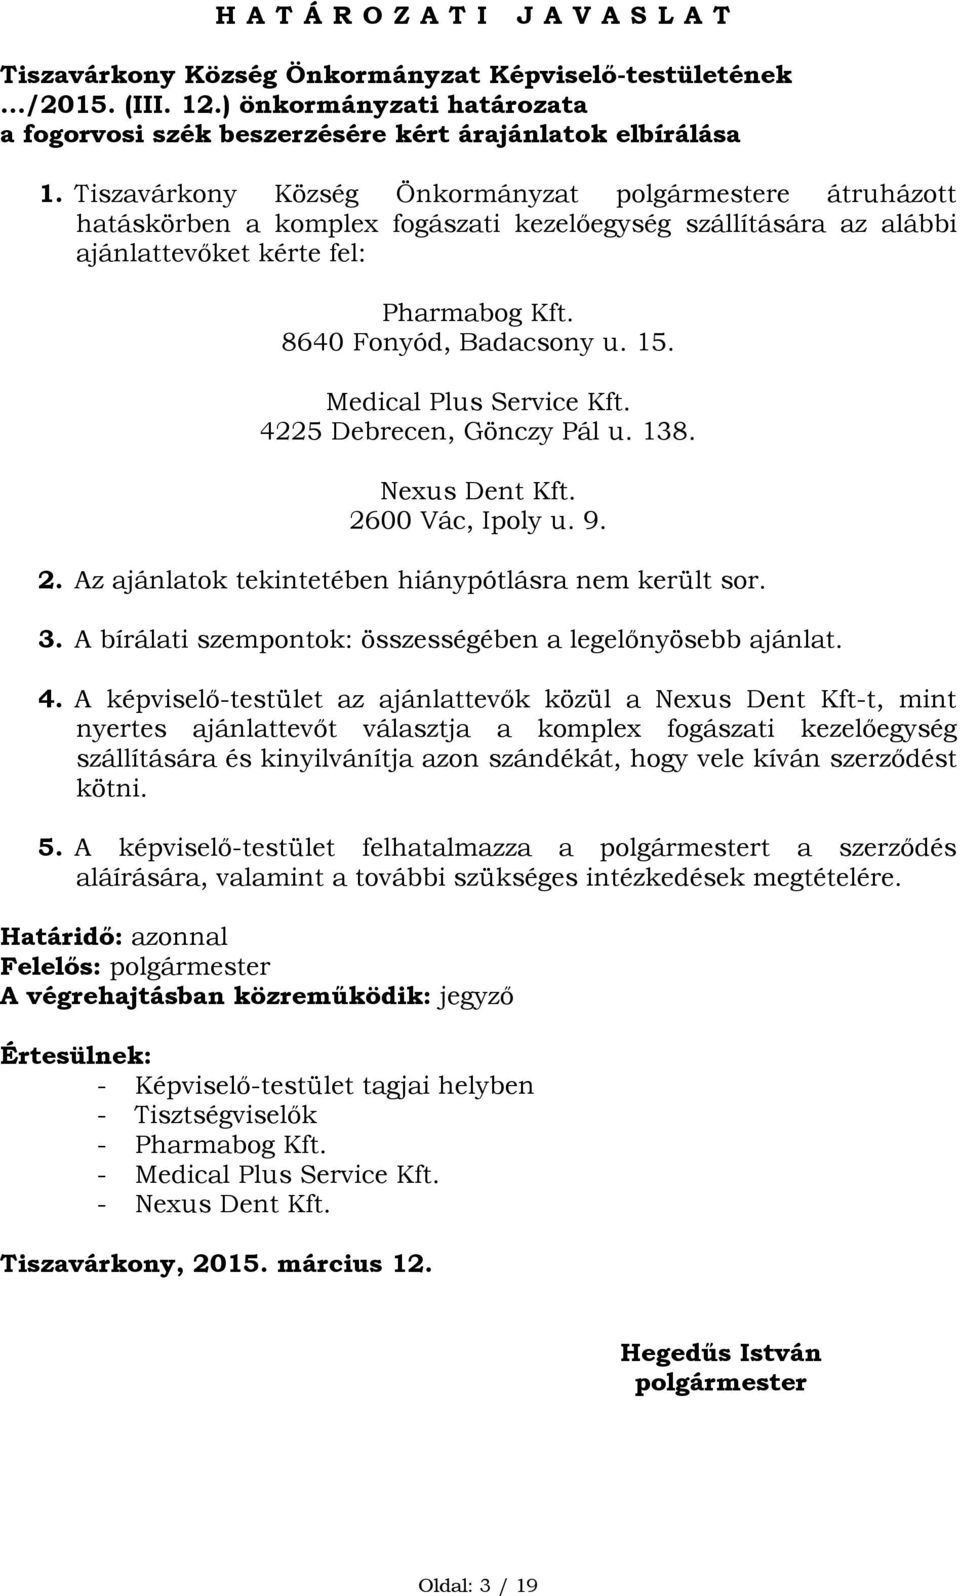 Medical Plus Service Kft. 4225 Debrecen, Gönczy Pál u. 138. Nexus Dent Kft. 2600 Vác, Ipoly u. 9. 2. Az ajánlatok tekintetében hiánypótlásra nem került sor. 3.